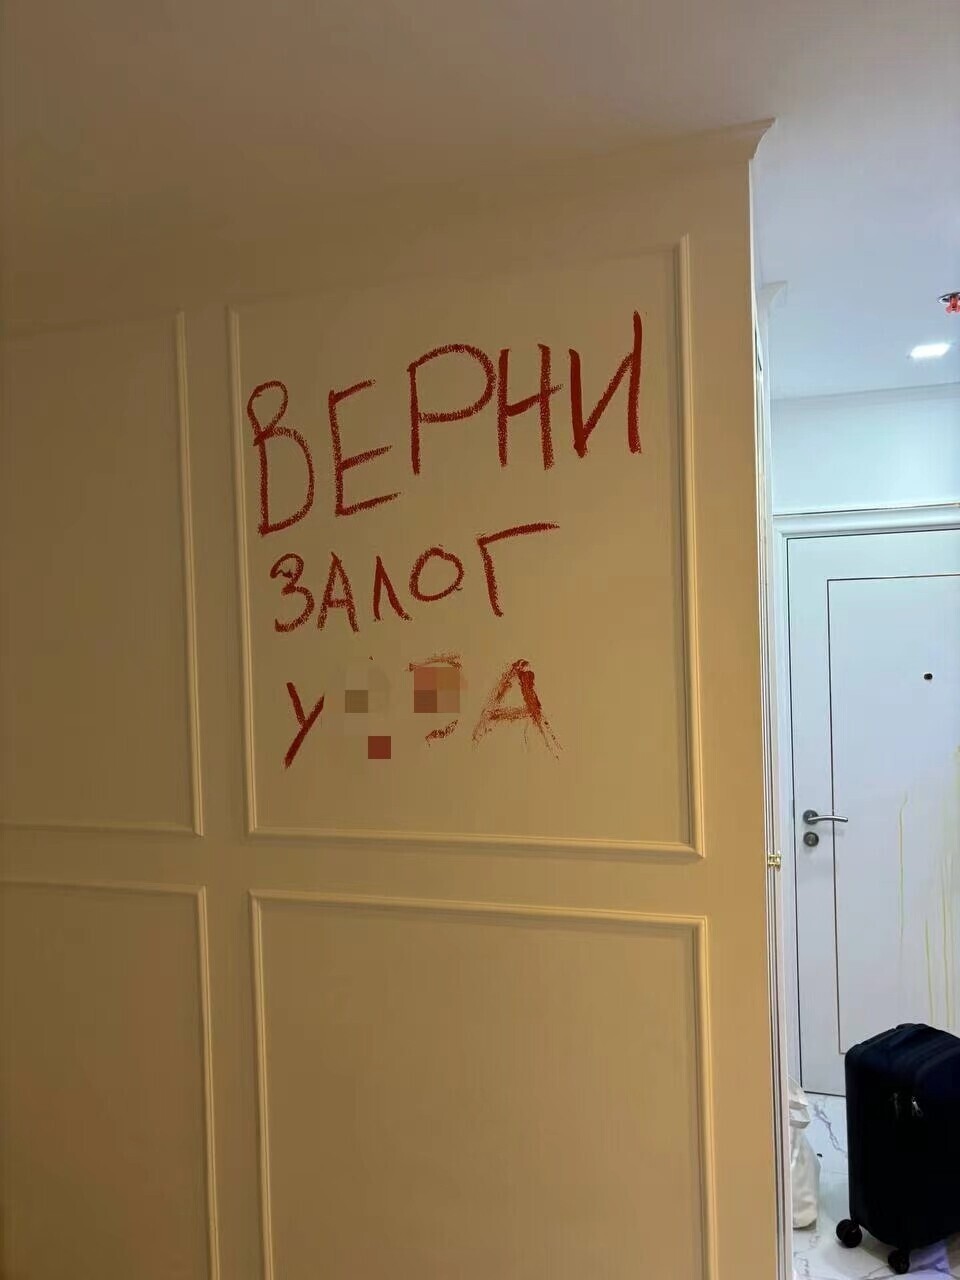 Вышел из дзен-режима: московский психотерапевт разгромил квартиру в Таиланде, хозяйка которой отказалась возвращать залог в рублях